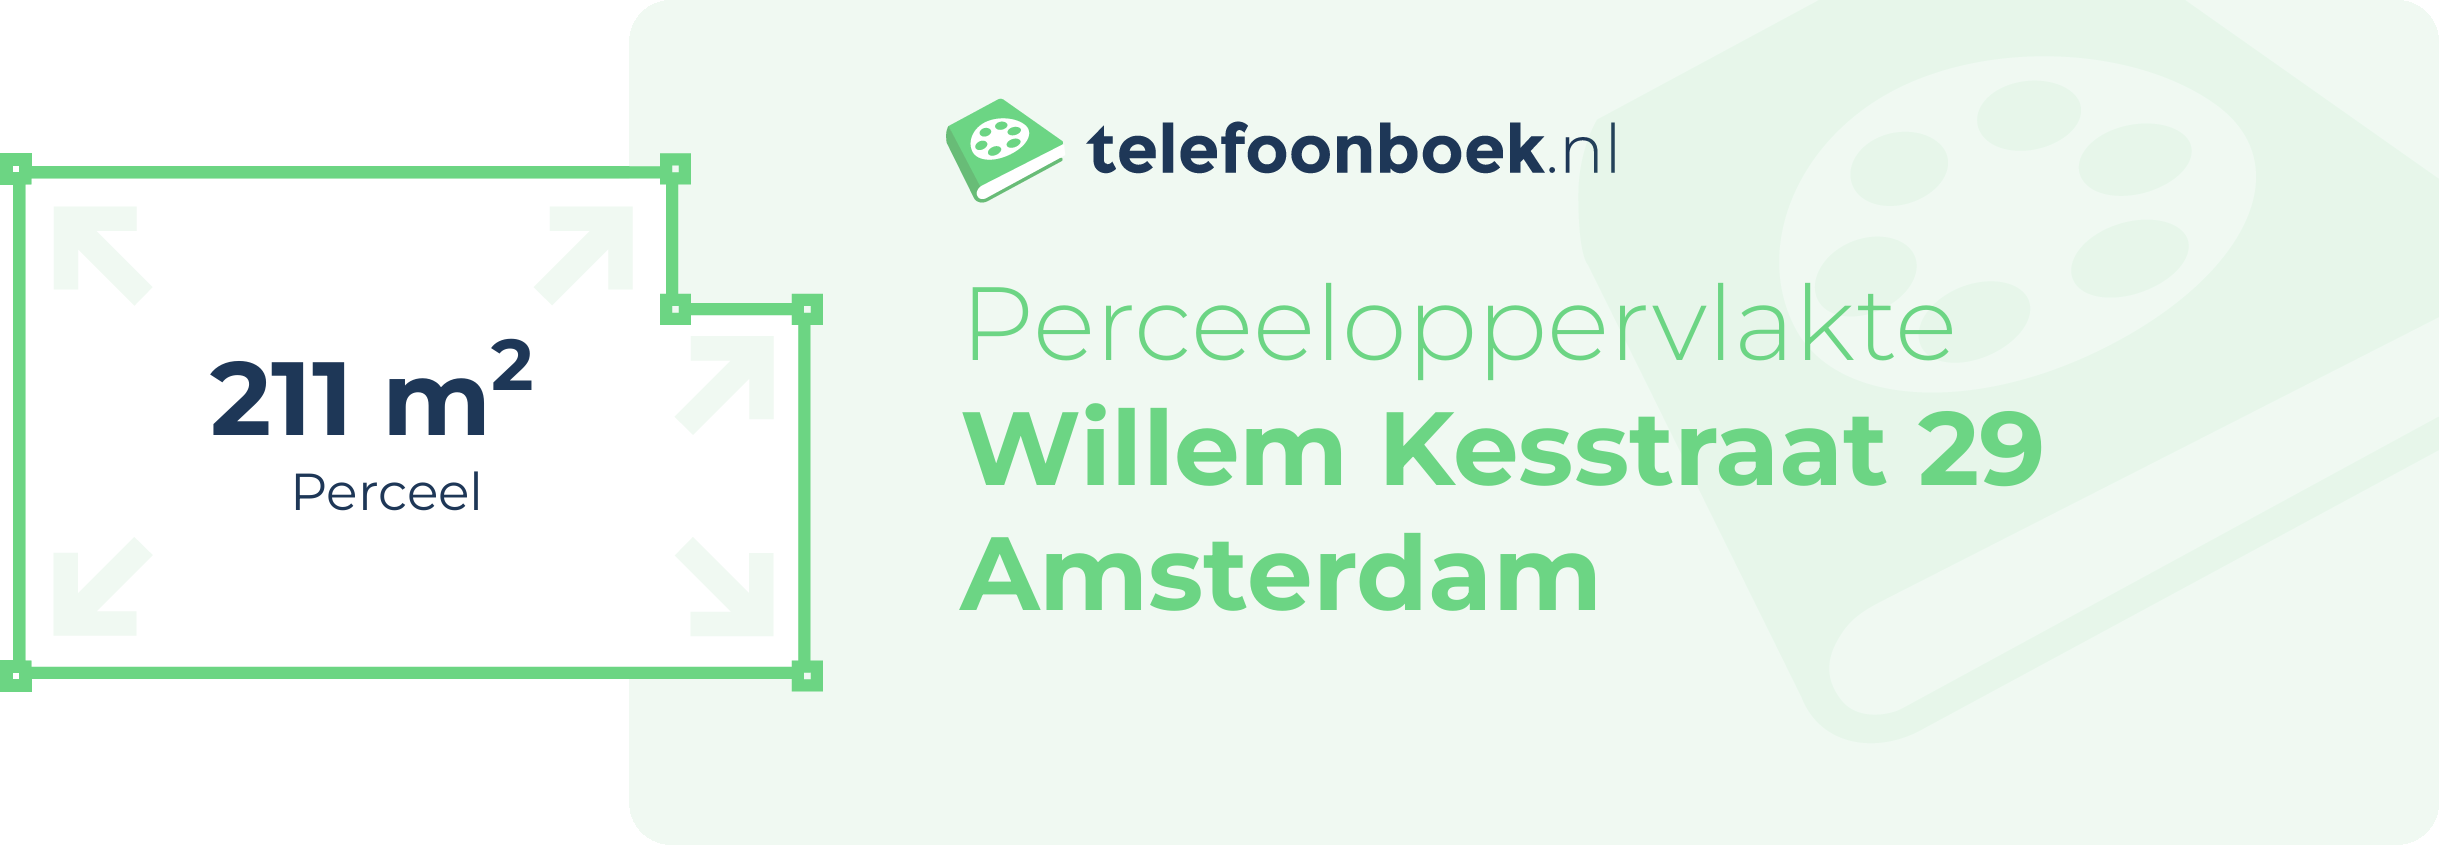 Perceeloppervlakte Willem Kesstraat 29 Amsterdam